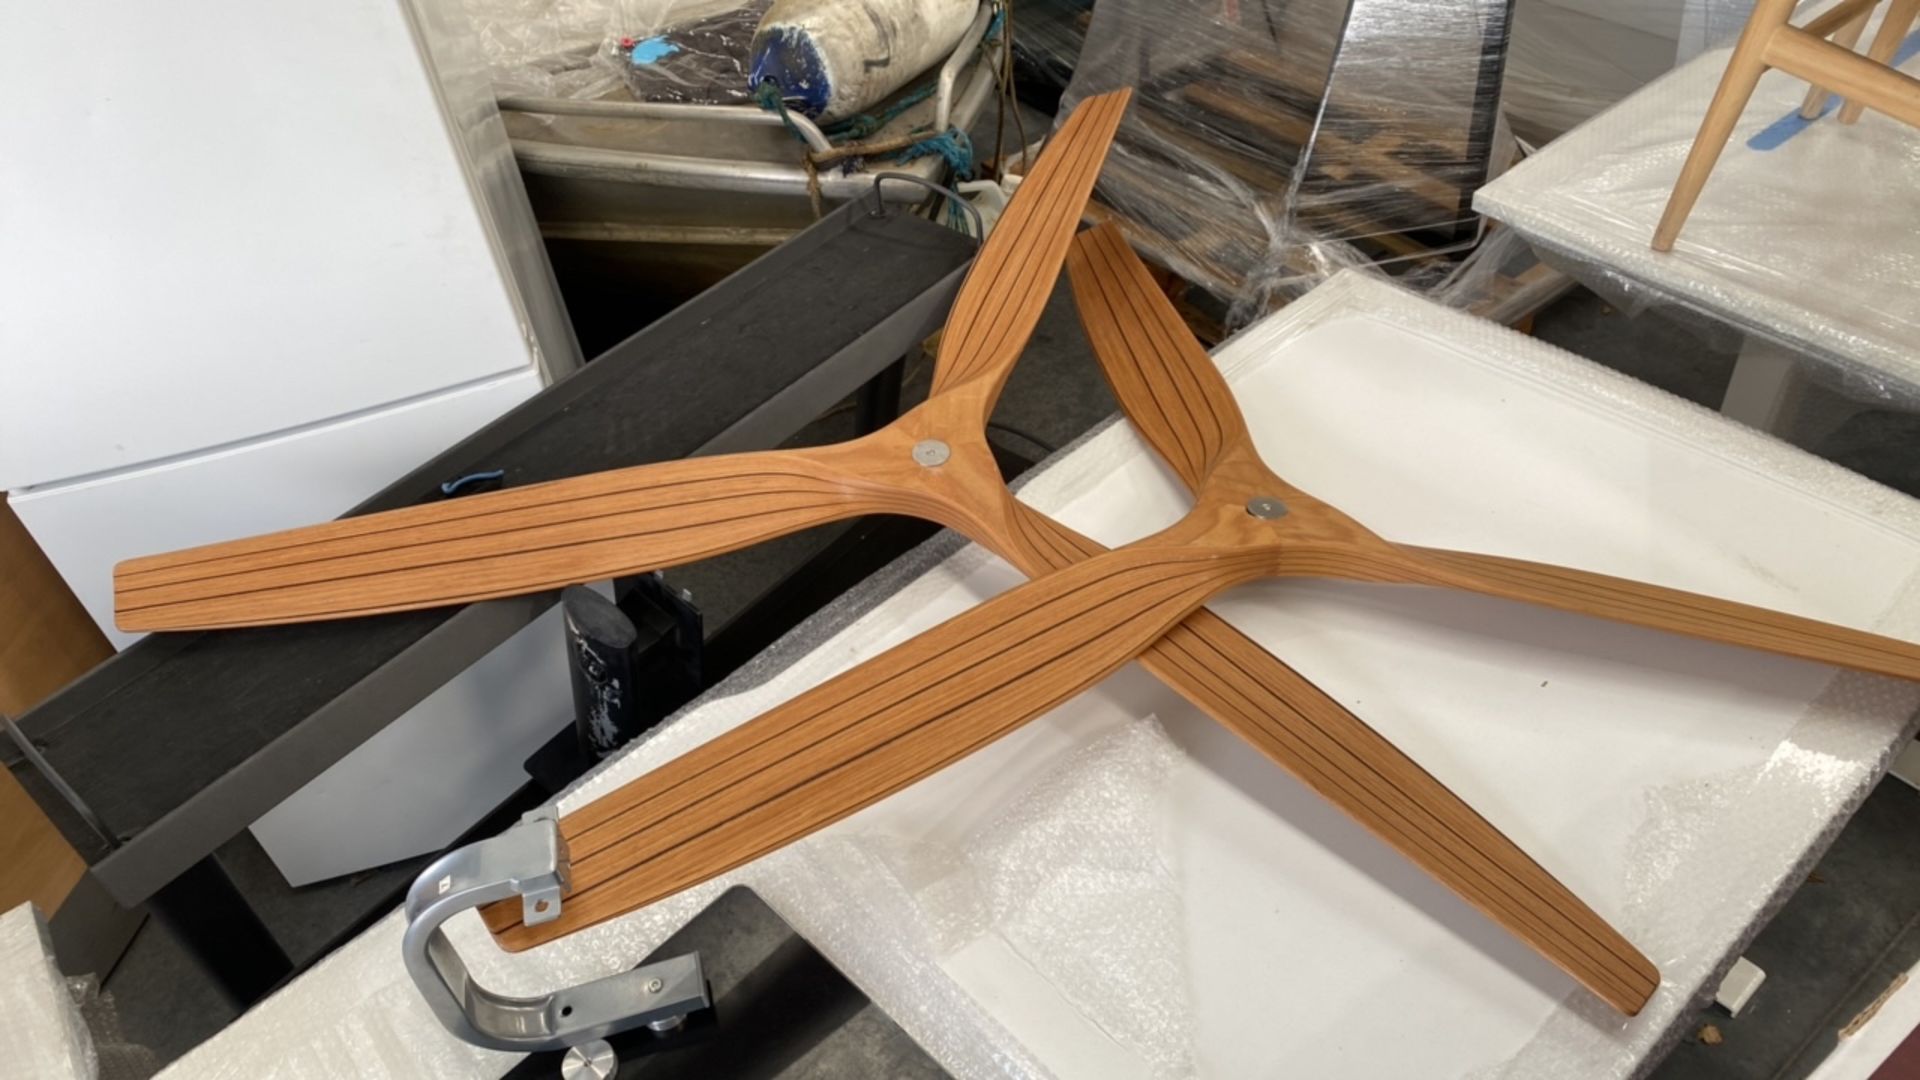 Wooden Propeller X4 - Image 4 of 4